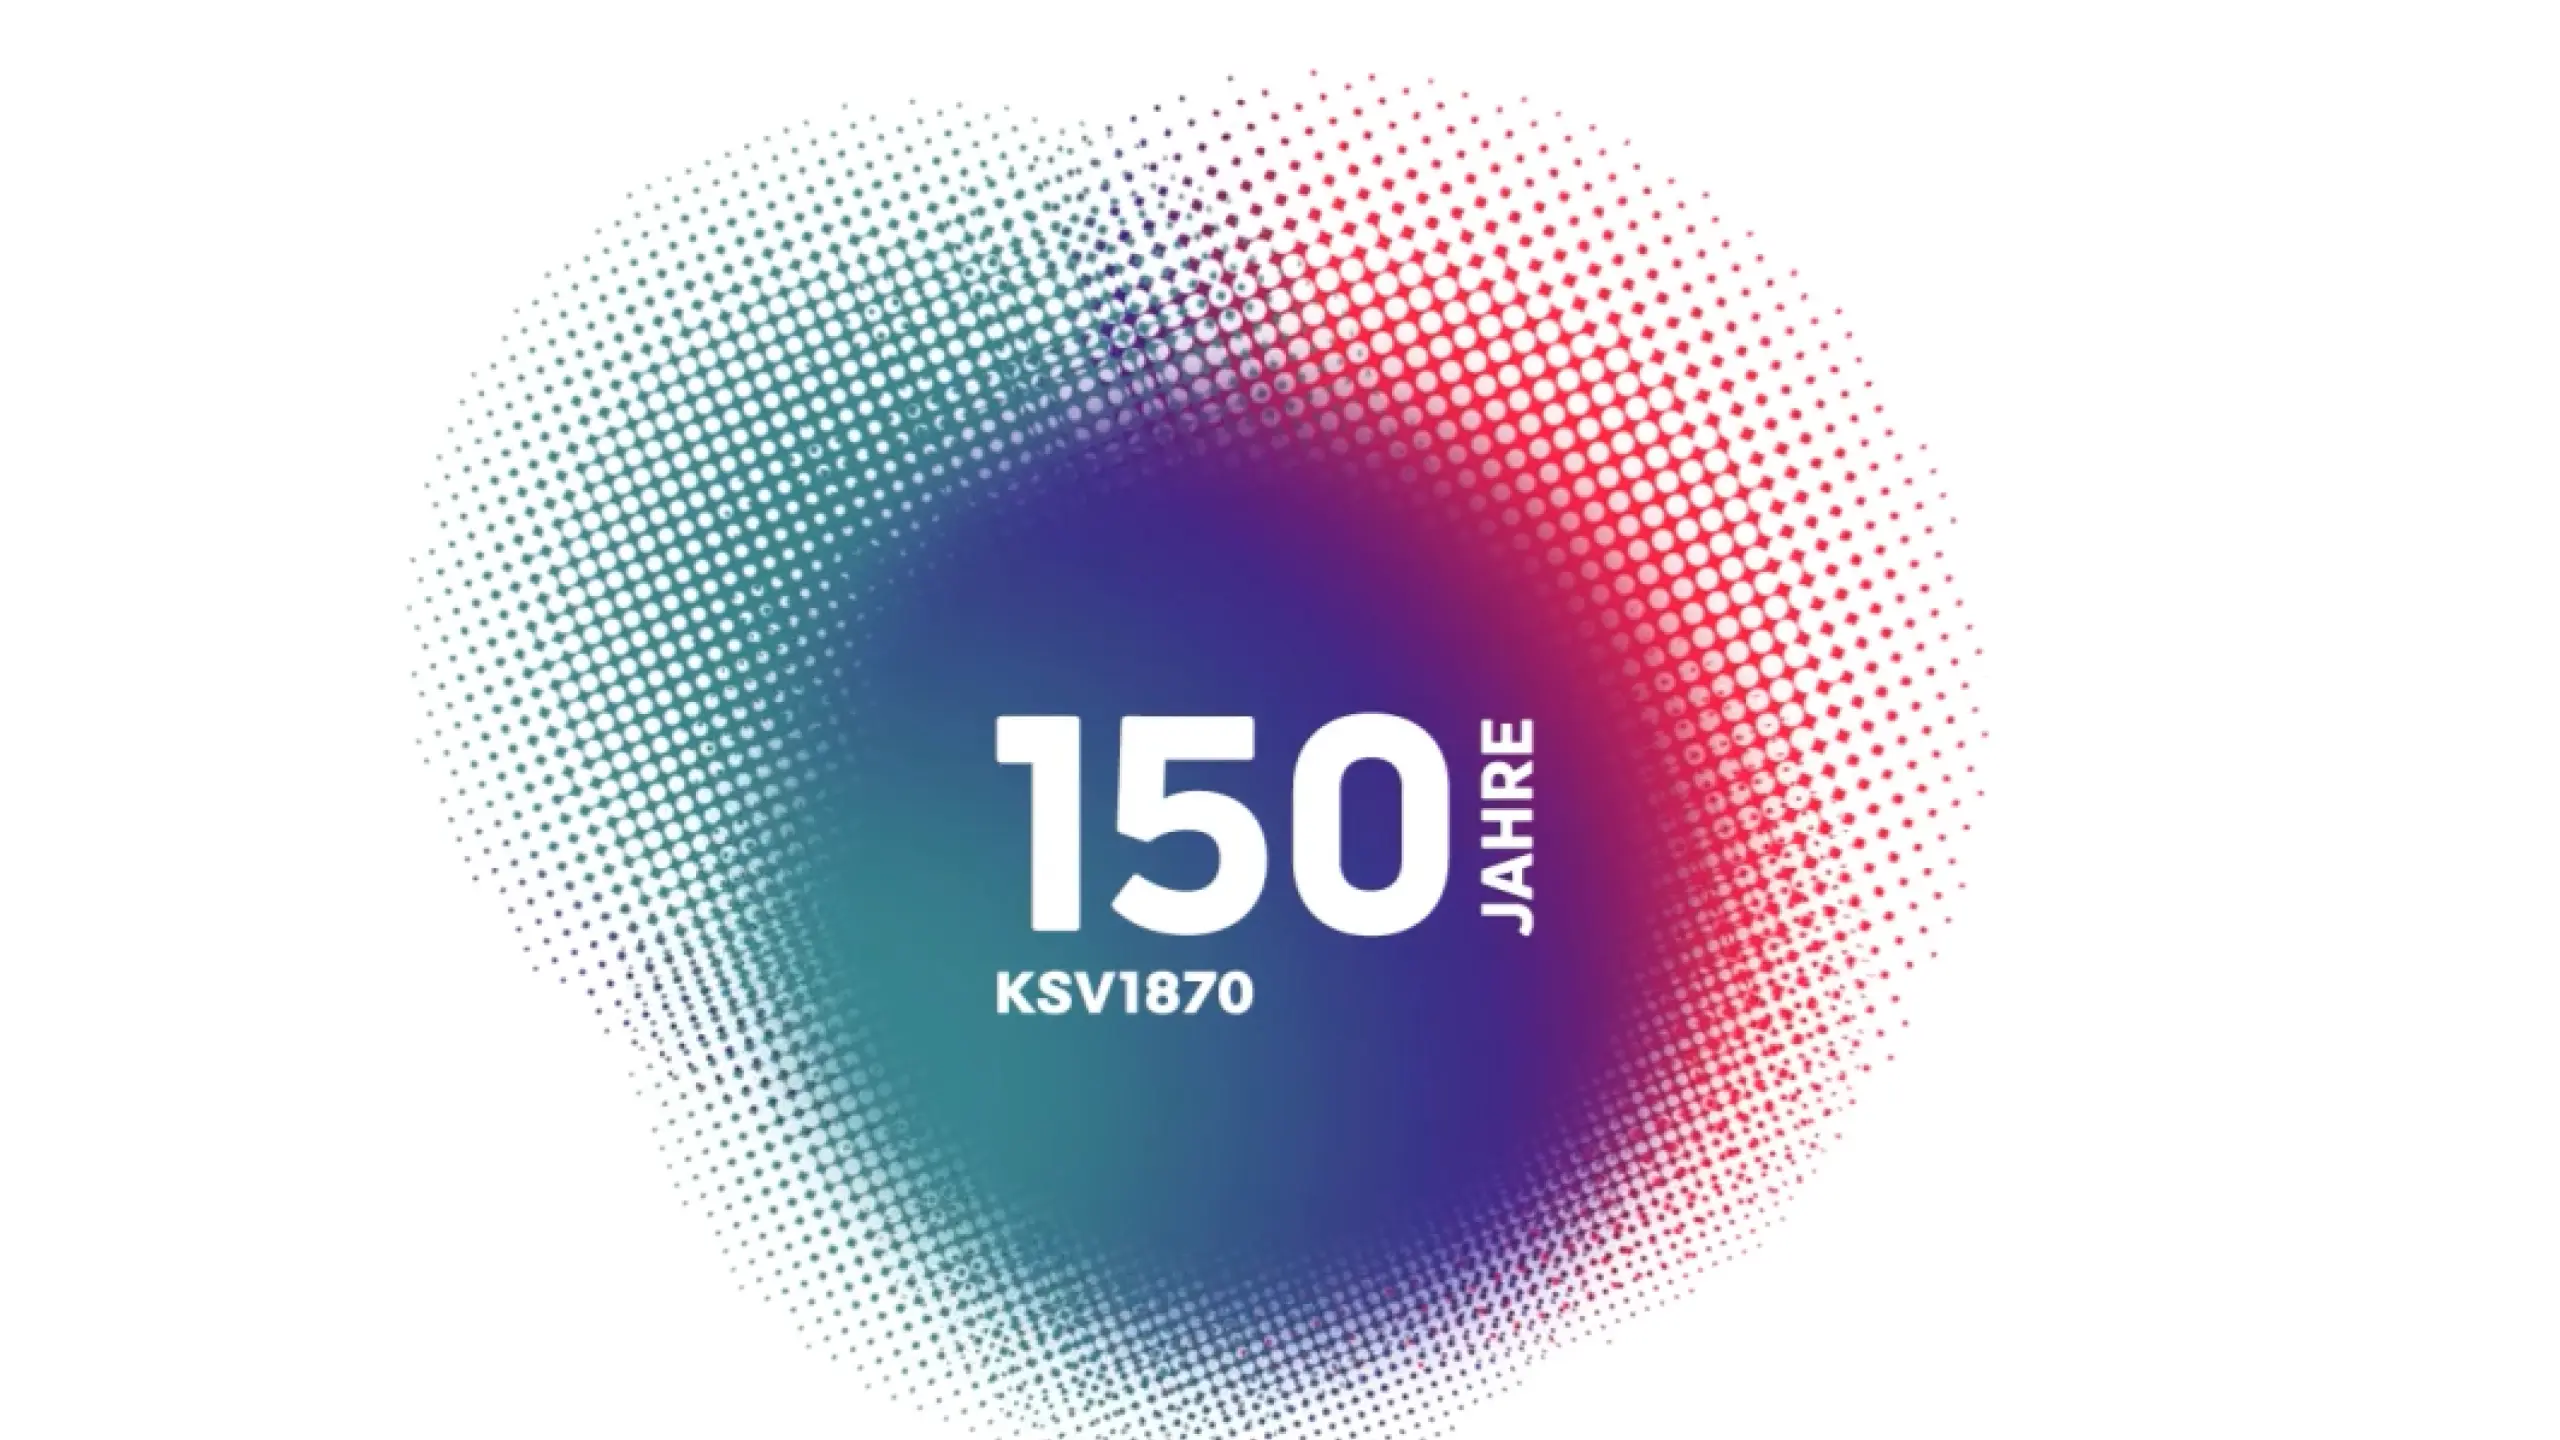 KSV1870 - 150 Jahre für die Wirtschaft